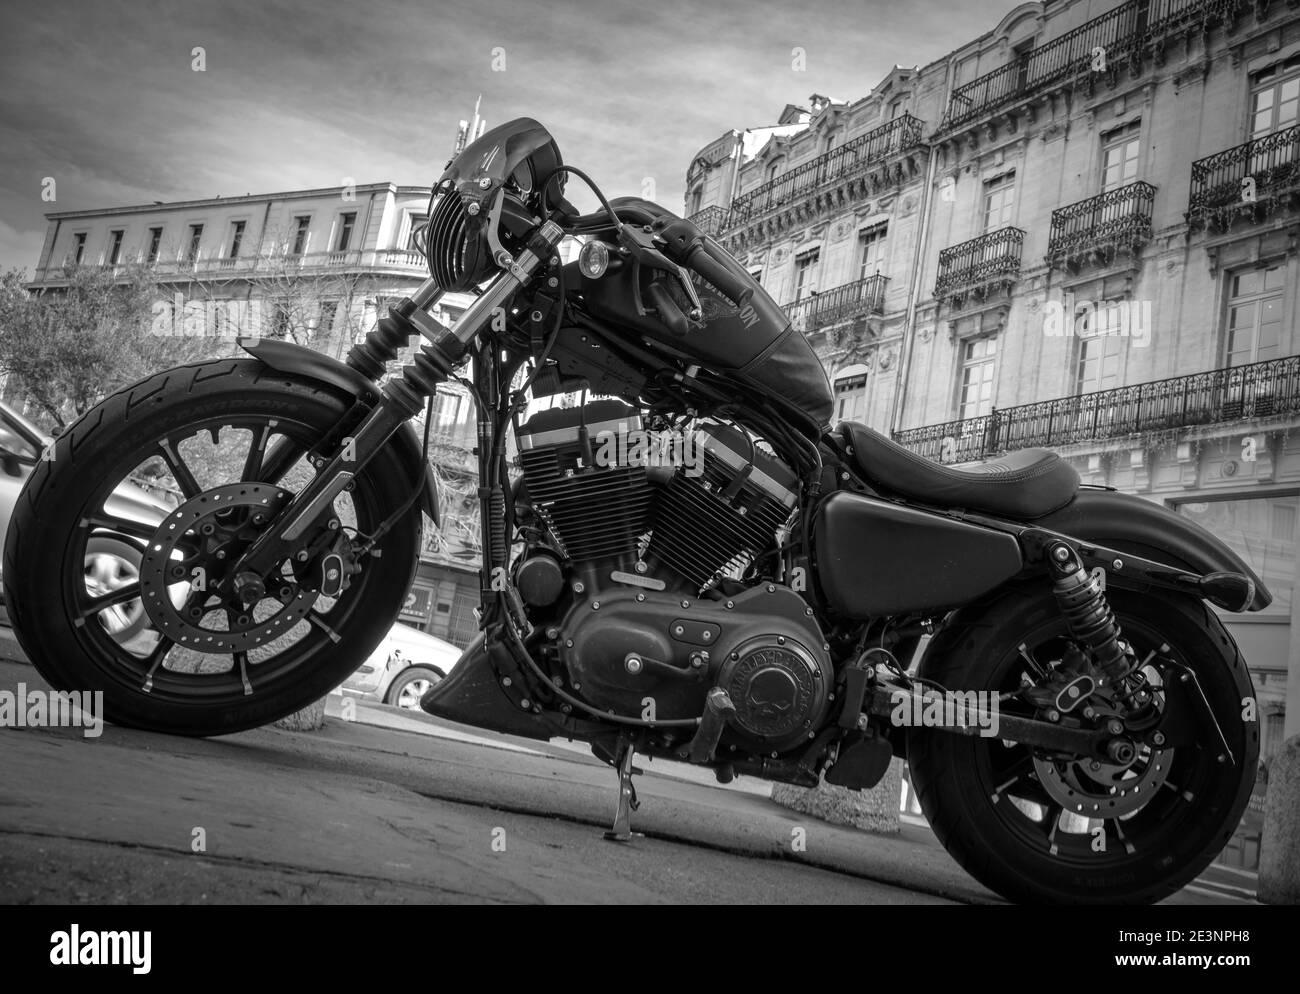 Harley Davidson Motorrad auf einer Straße in einer französischen Stadt Mit alten historischen Gebäuden im Hintergrund - schwarz und Weiß Stockfoto